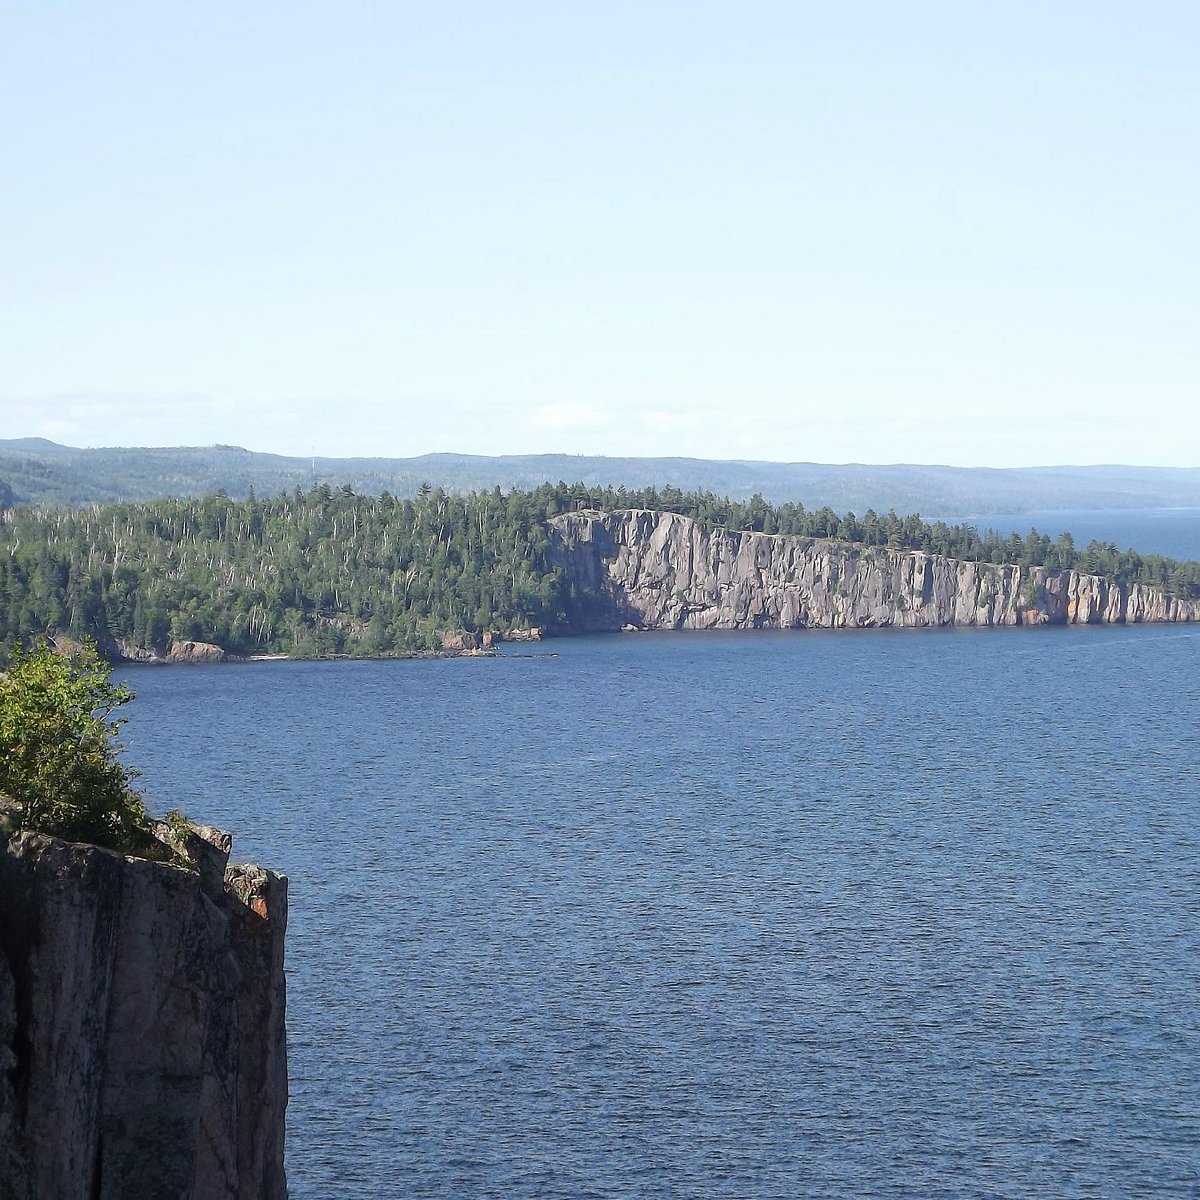 Hồ Superior: Hồ Superior là một trong những hồ lớn nhất tại Bắc Mỹ với khung cảnh tuyệt đẹp. Bạn sẽ không muốn bỏ lỡ cơ hội được nhìn ngắm vẻ đẹp tuyệt vời của hồ Superior. Hãy xem ảnh để khám phá thêm về cảnh quan hùng vĩ này.